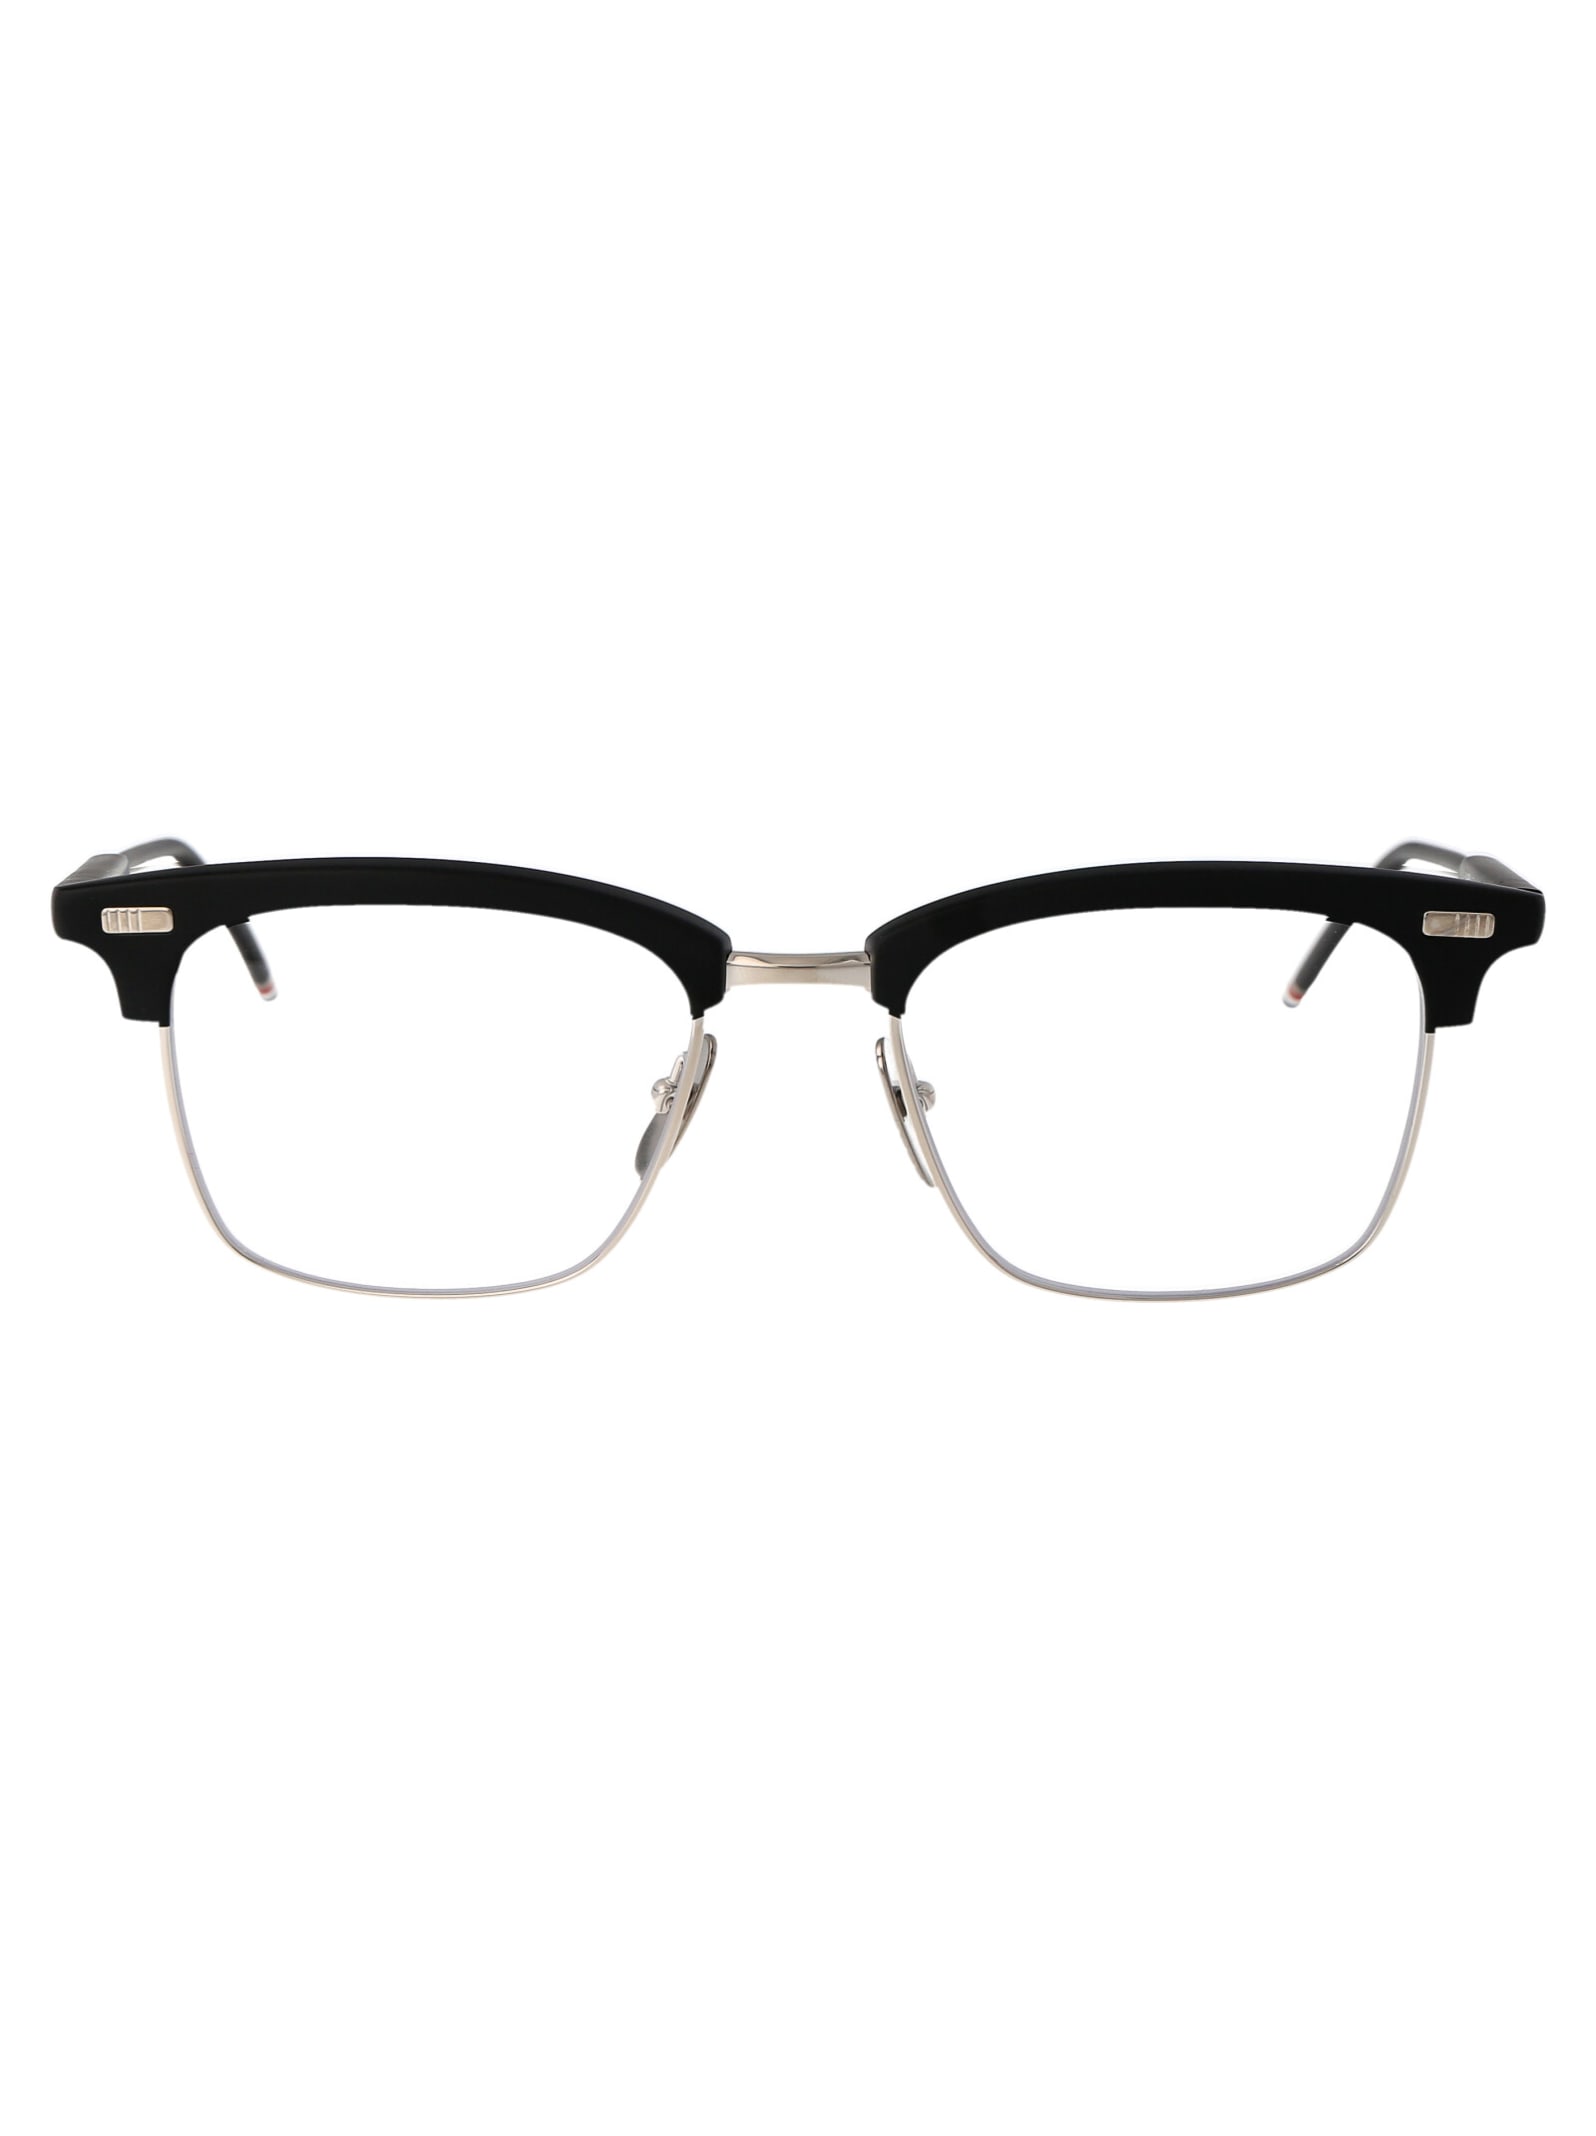 Ueo711a-g0003-005-52 Glasses